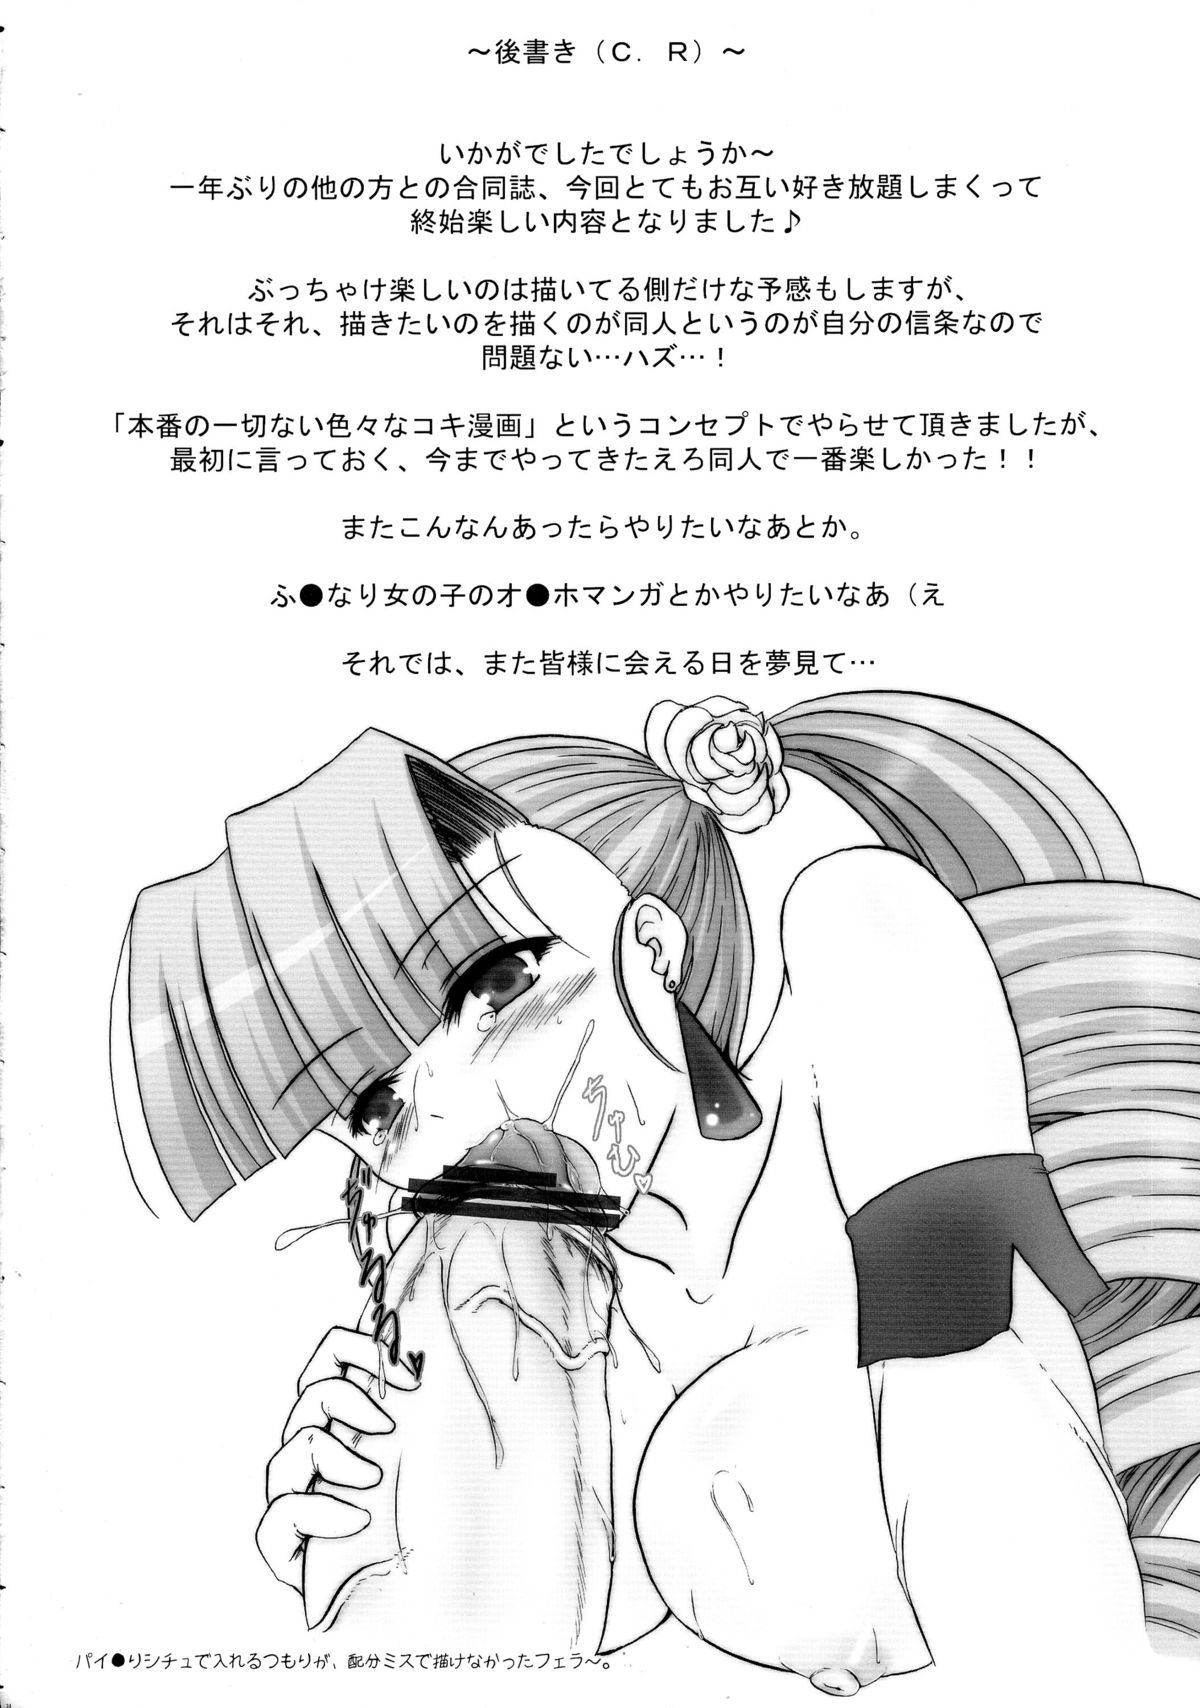 [C.R's NEST (Akenami Yasutaka, C.R, Chouzetsu Yarou)] Bokura wa Kanojo no te no Naka (Arcana Heart) page 24 full